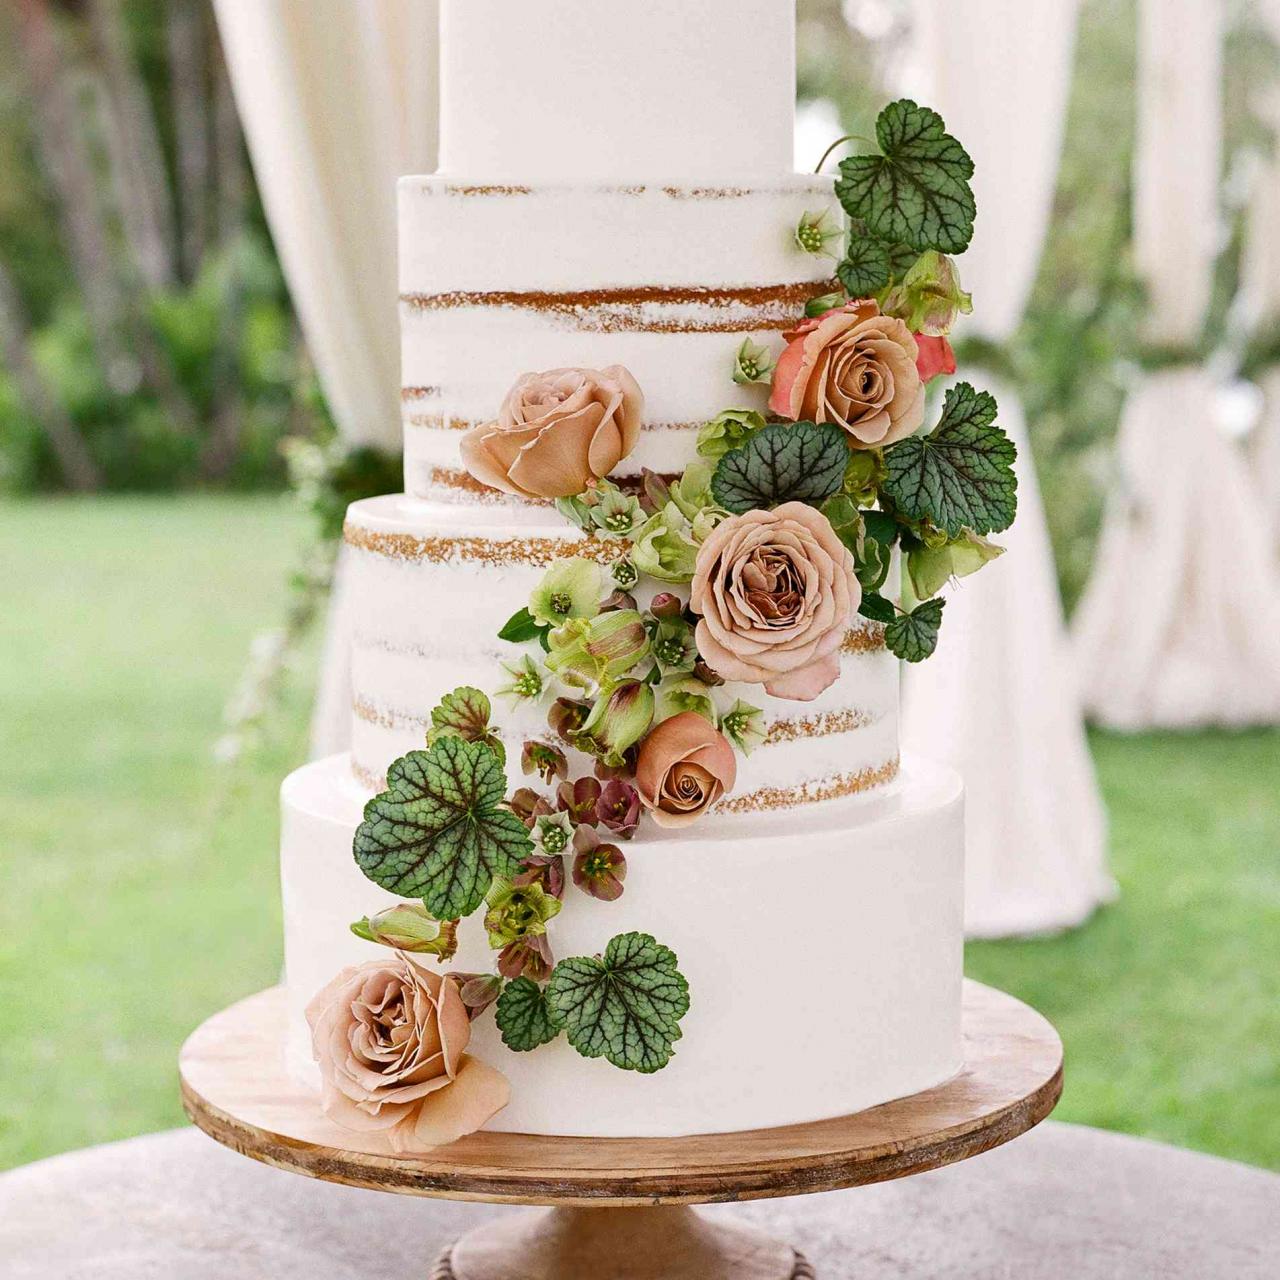 Wedding cake decorations uk